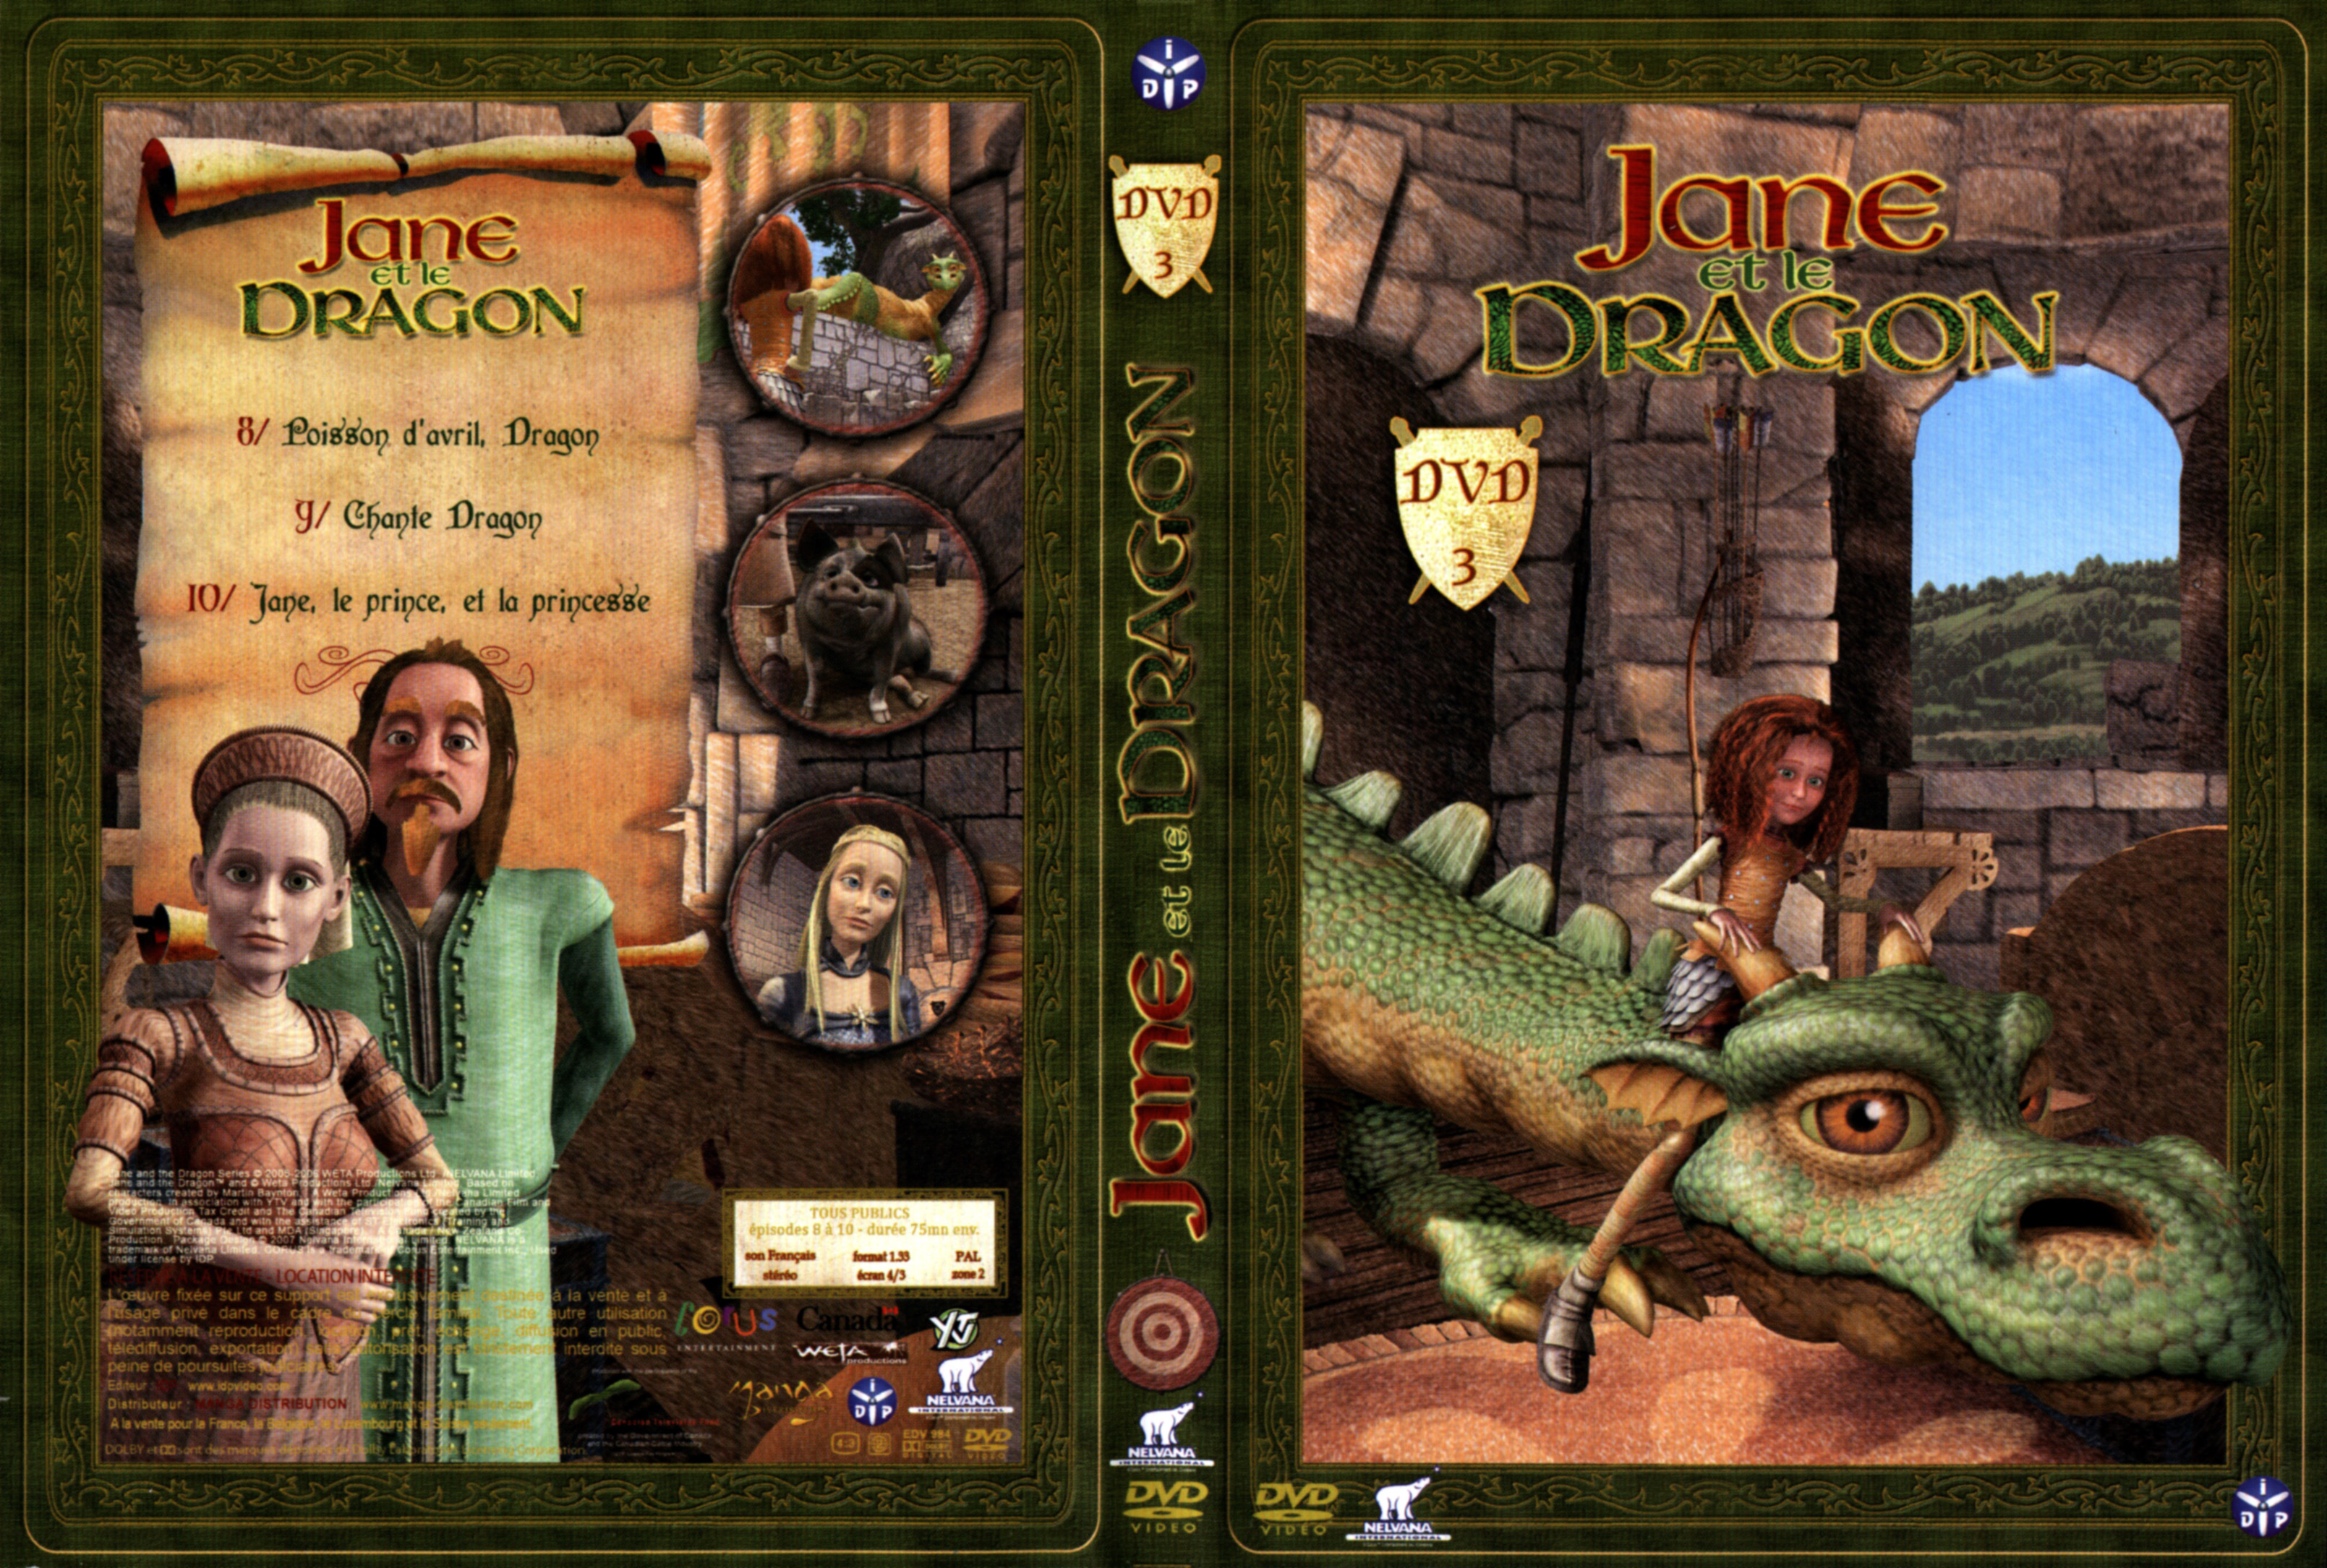 Jaquette DVD Jane et le Dragon vol 3